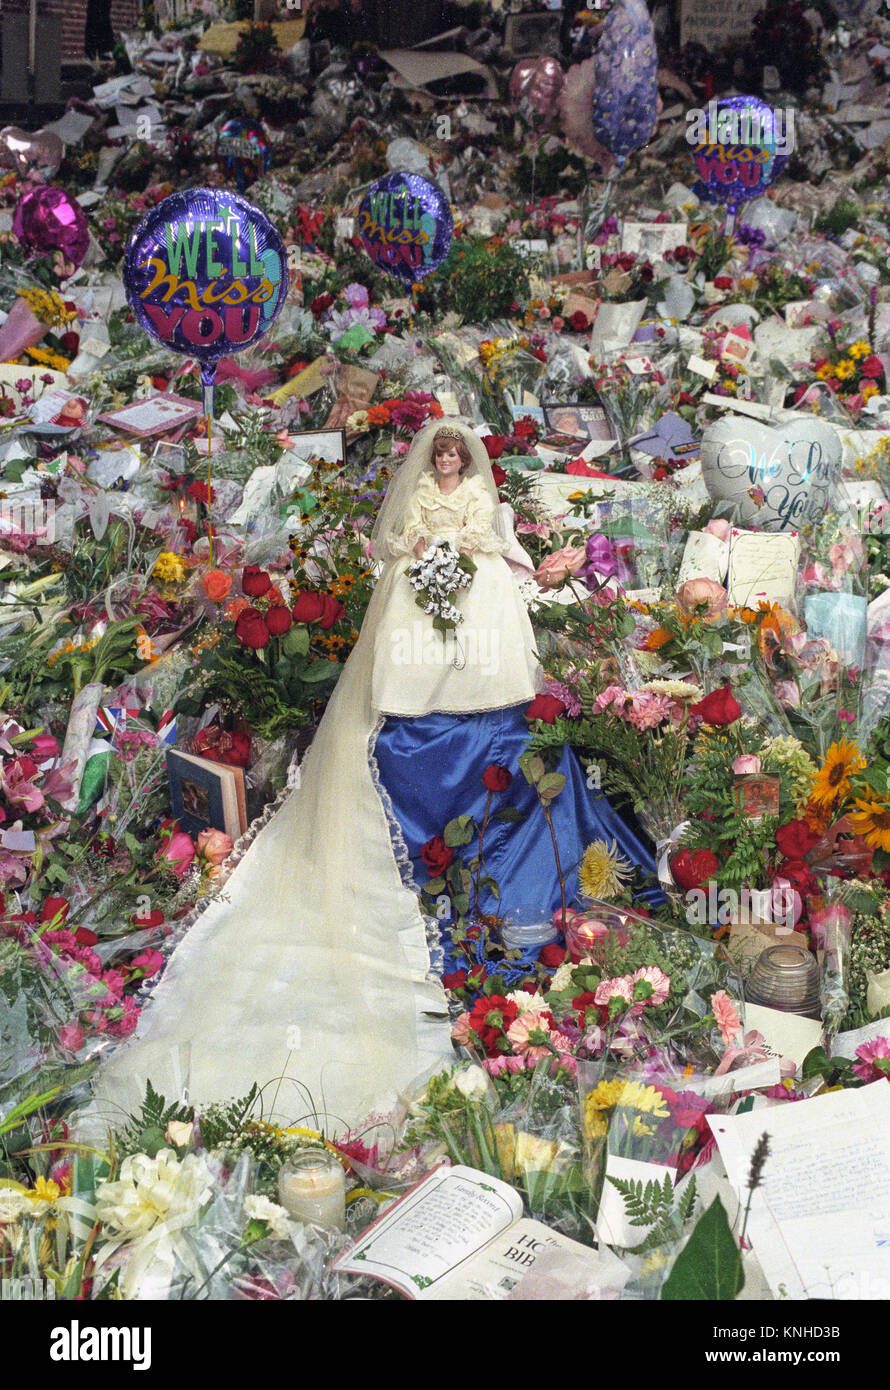 Prinzessin Diana Braut Puppe, mit seinen langen Schleier, steht Königlich  unter den Blumen, Luftballons und Tribute an der Britischen Botschaft zu  Ehren des verstorbenen Prinzessin Diana. Es wurde dort von Danette Byrne